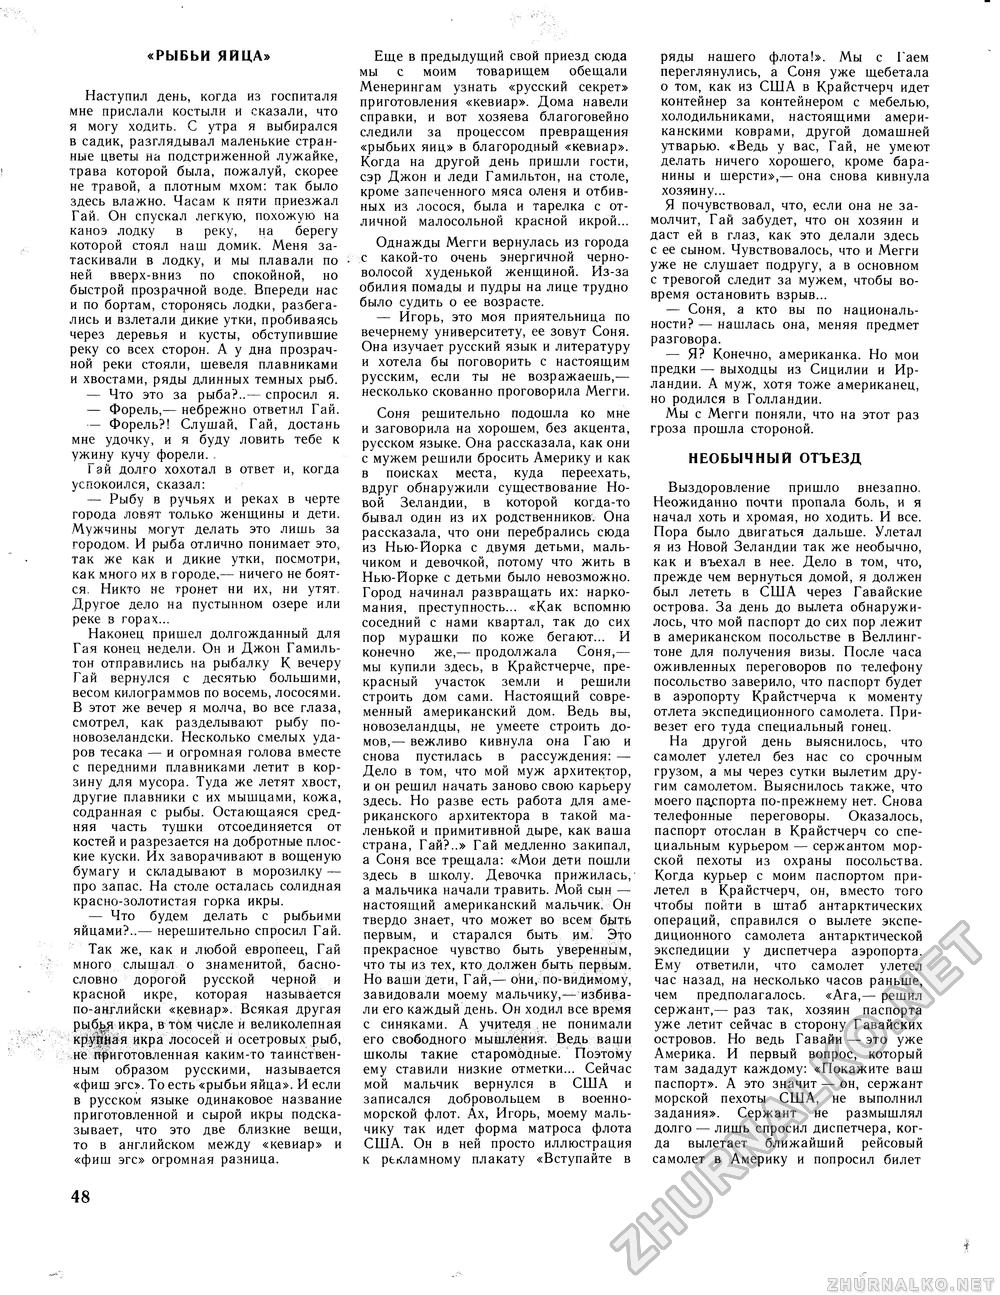 Вокруг света 1981-03, страница 50